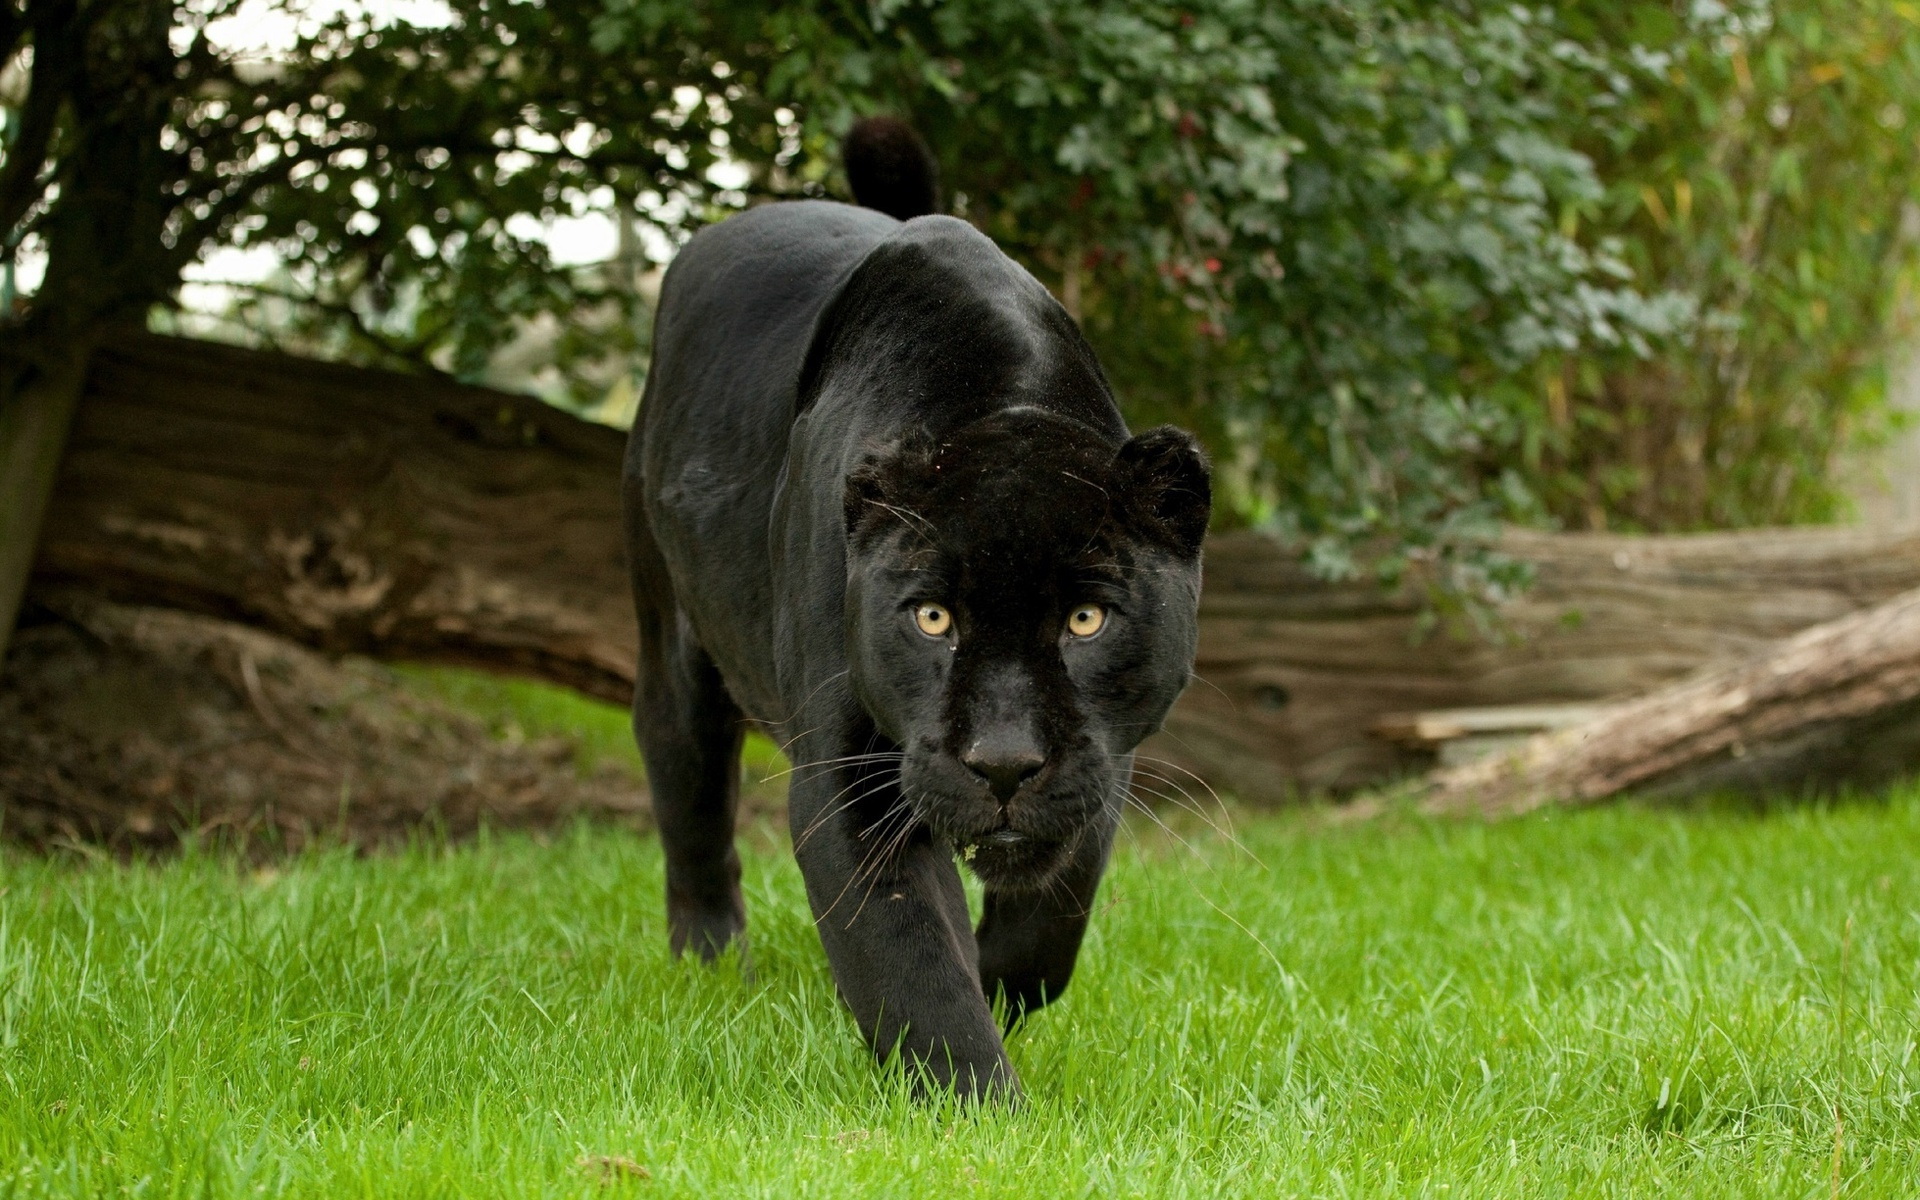 black jaguar animal wallpaper